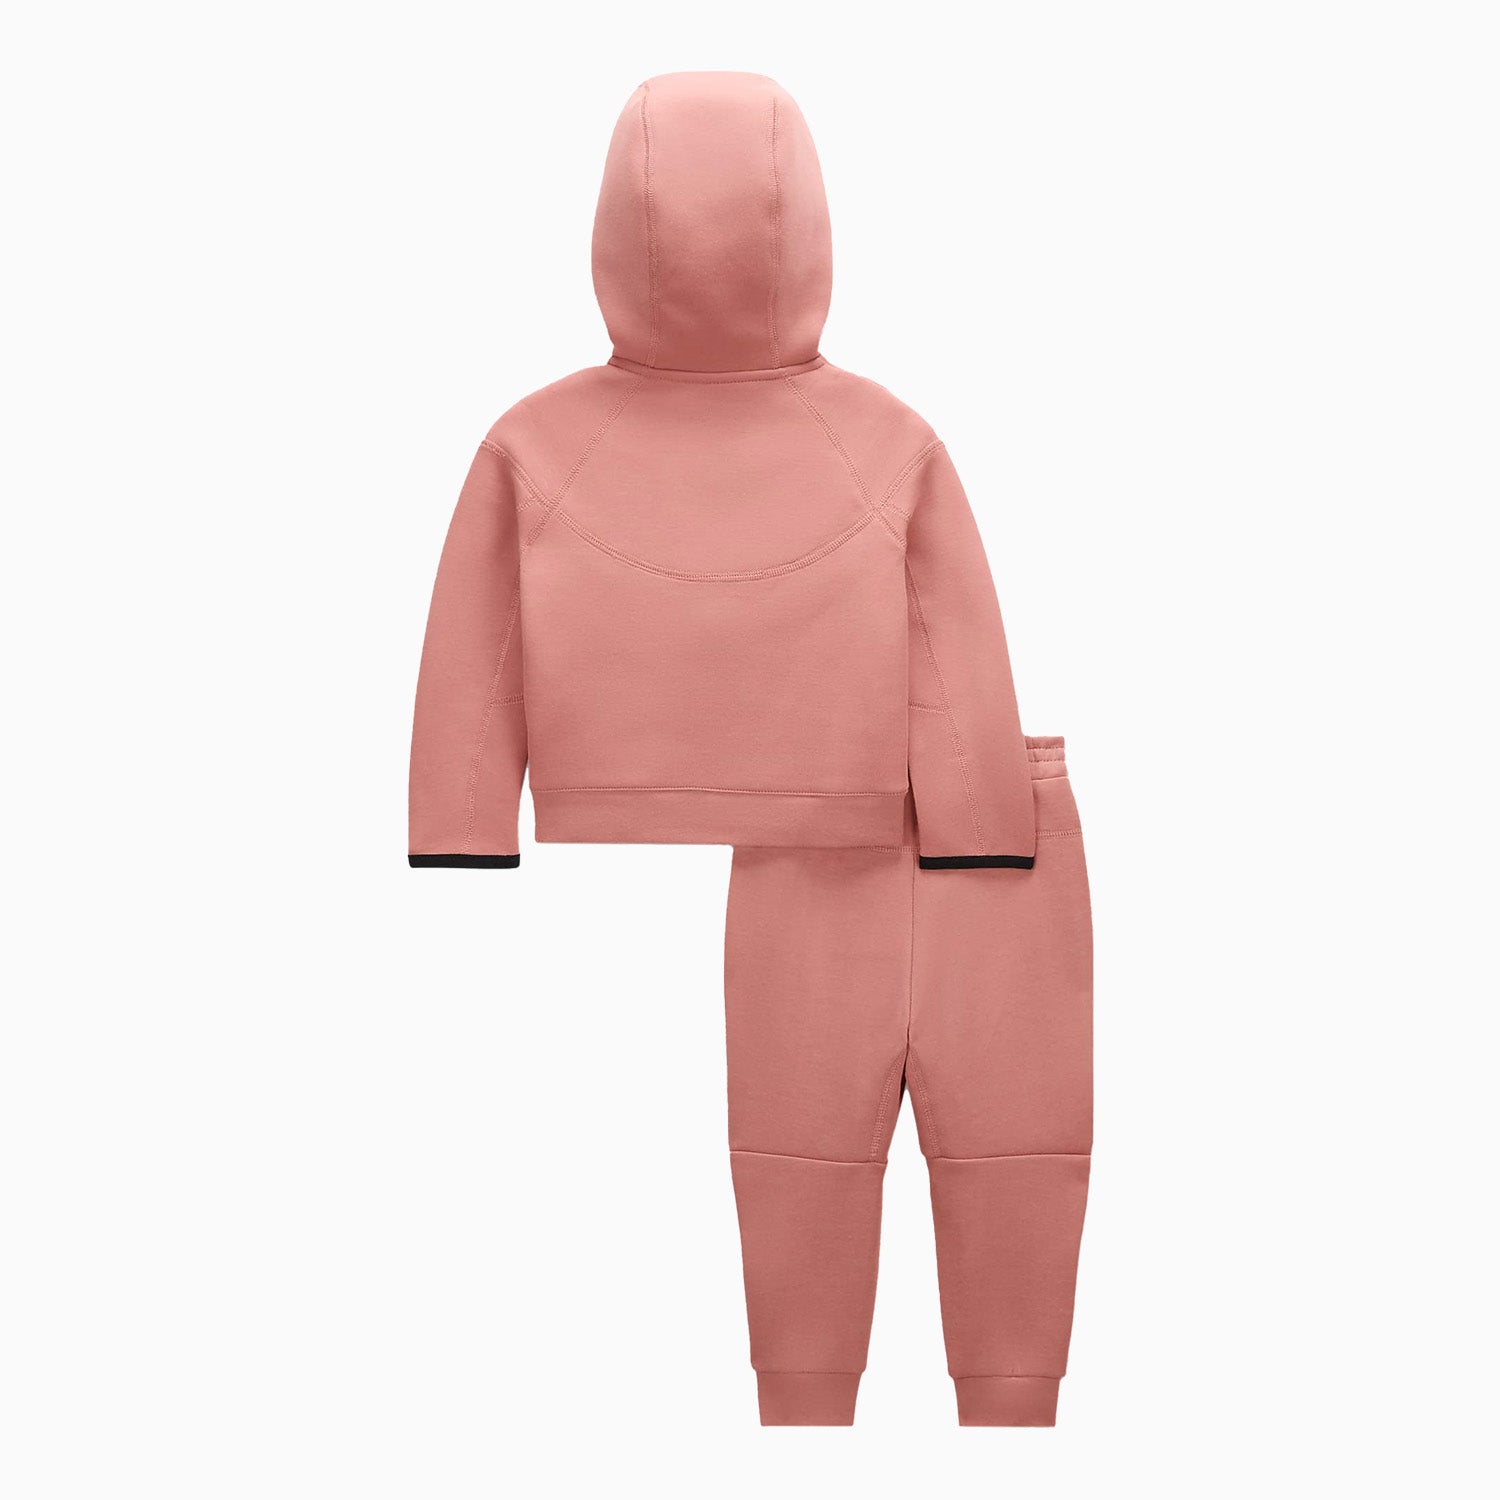 nike-kids-sportswear-tech-fleece-tracksuit-66l050-r3t